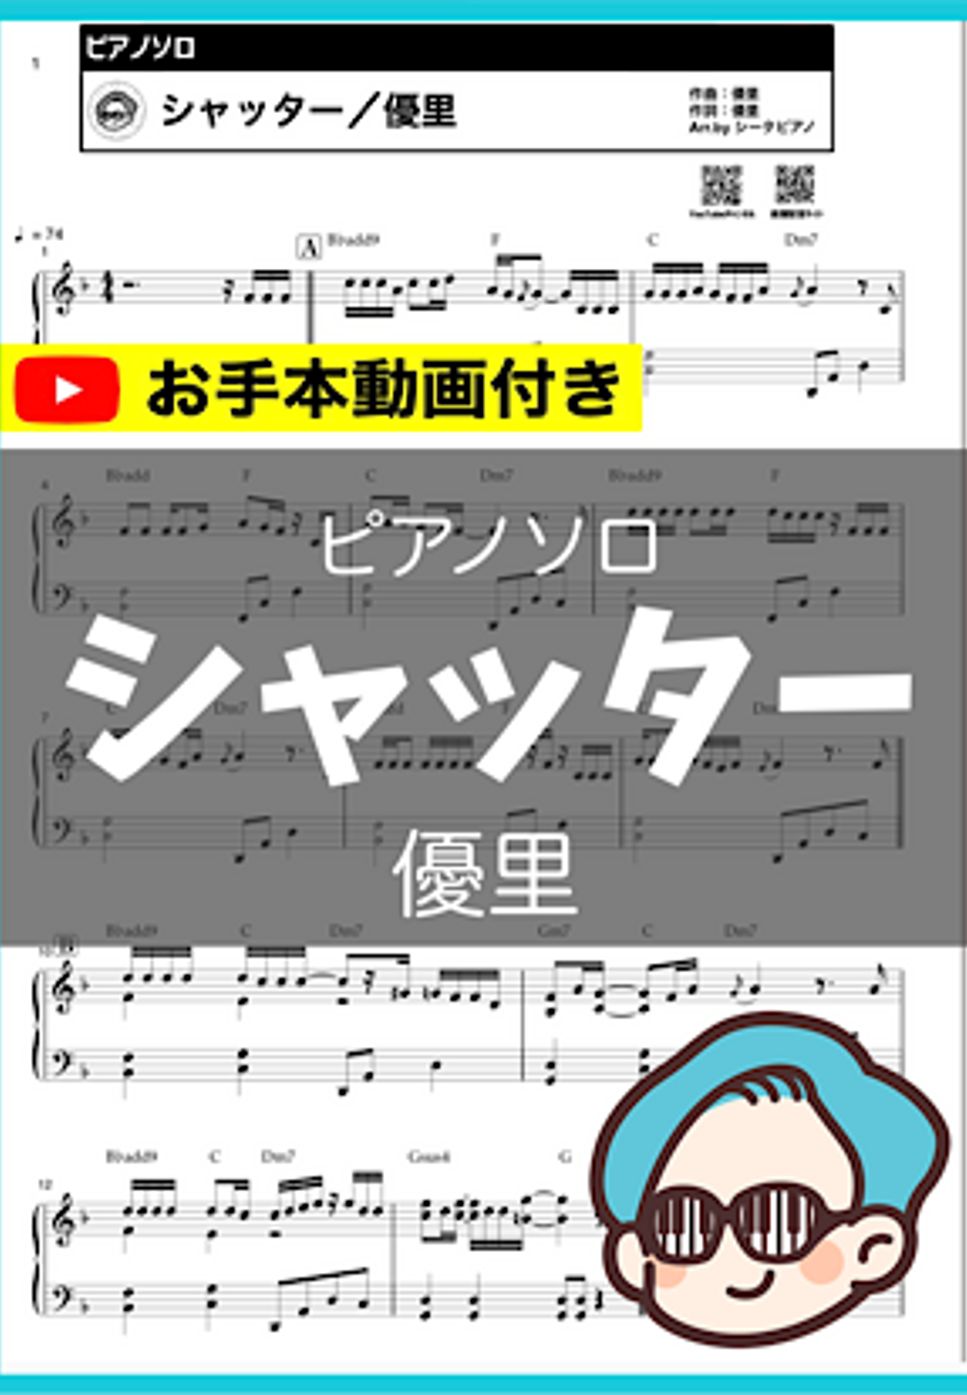 優里 - シャッター by シータピアノ